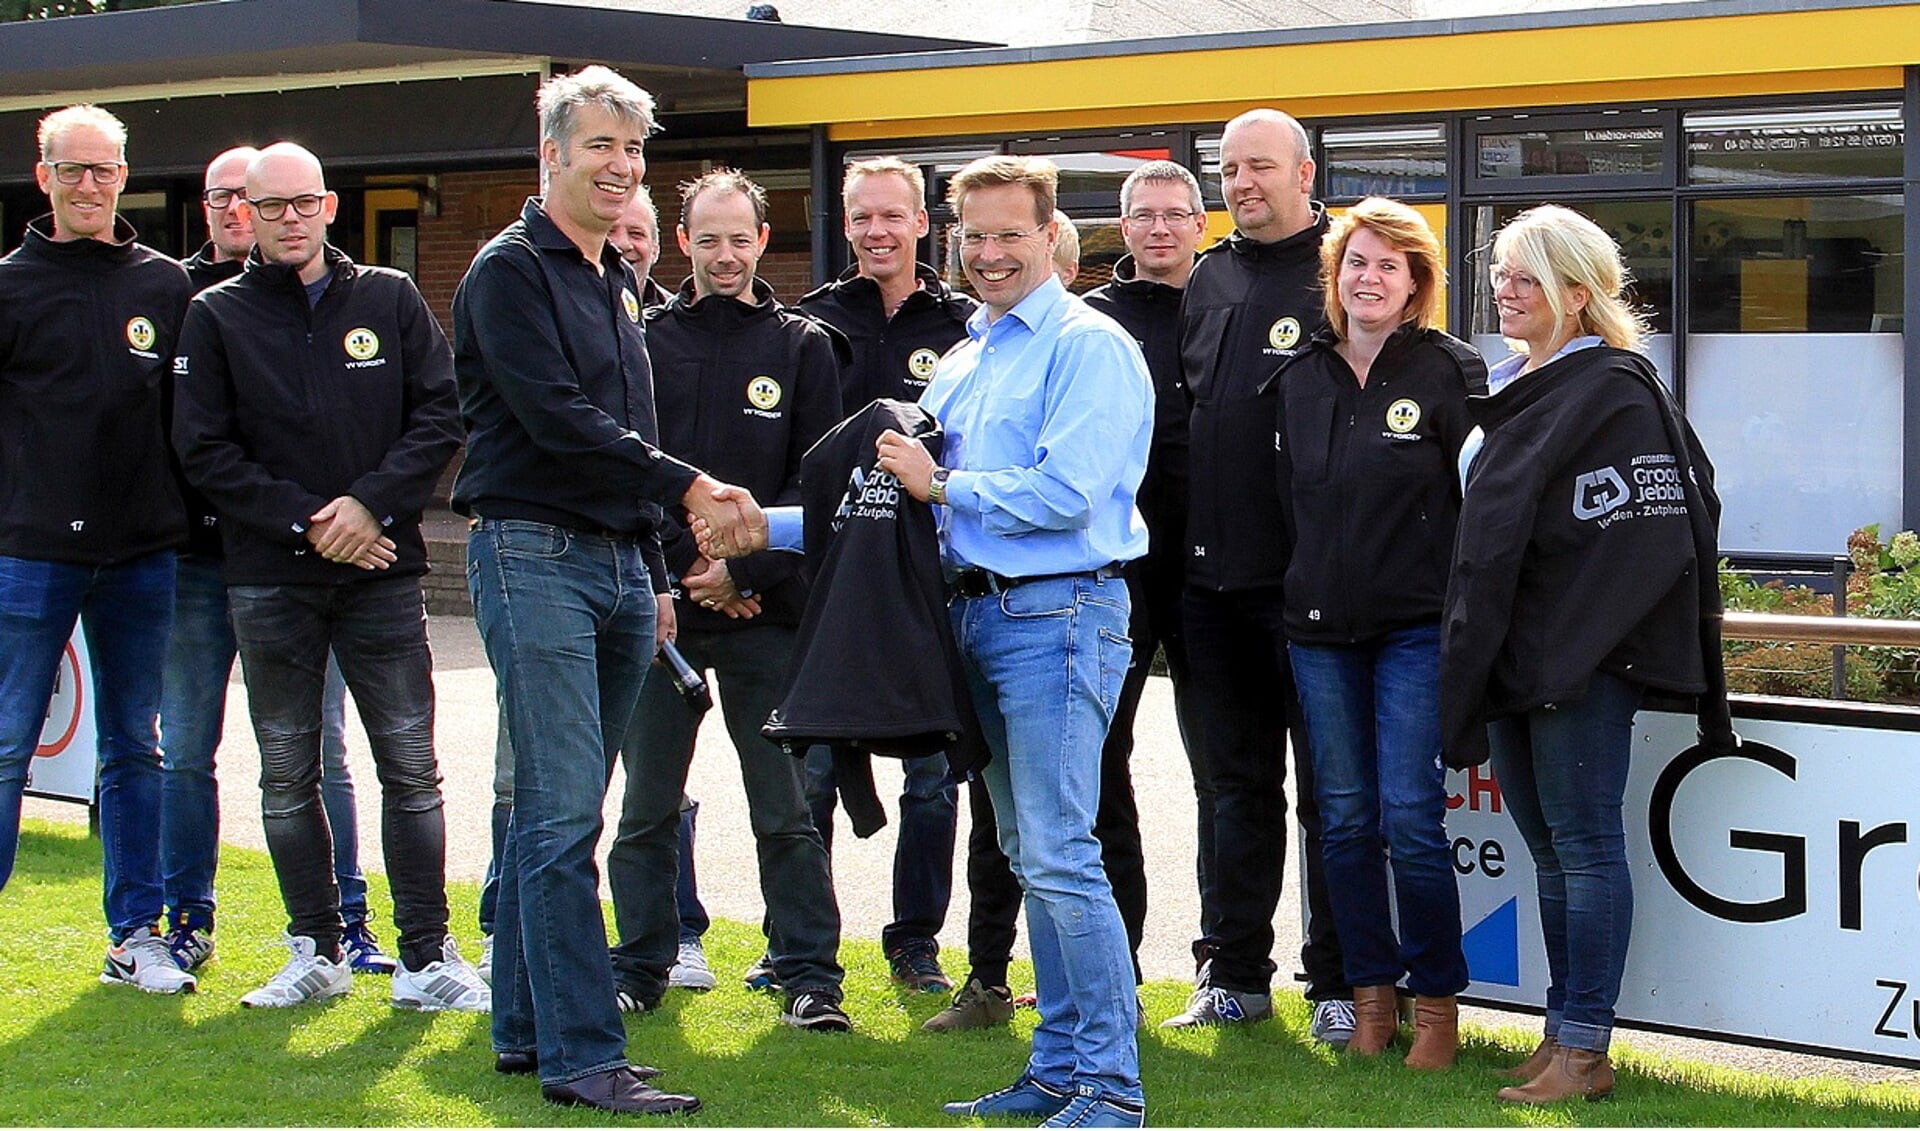 Hans Boers, sponsorcommissie v.v. Vorden, krijgt in het bijzijn van een tiental jeugdleiders symbolisch een jack overhandigd van Jan Groot Jebbink. Foto: PR